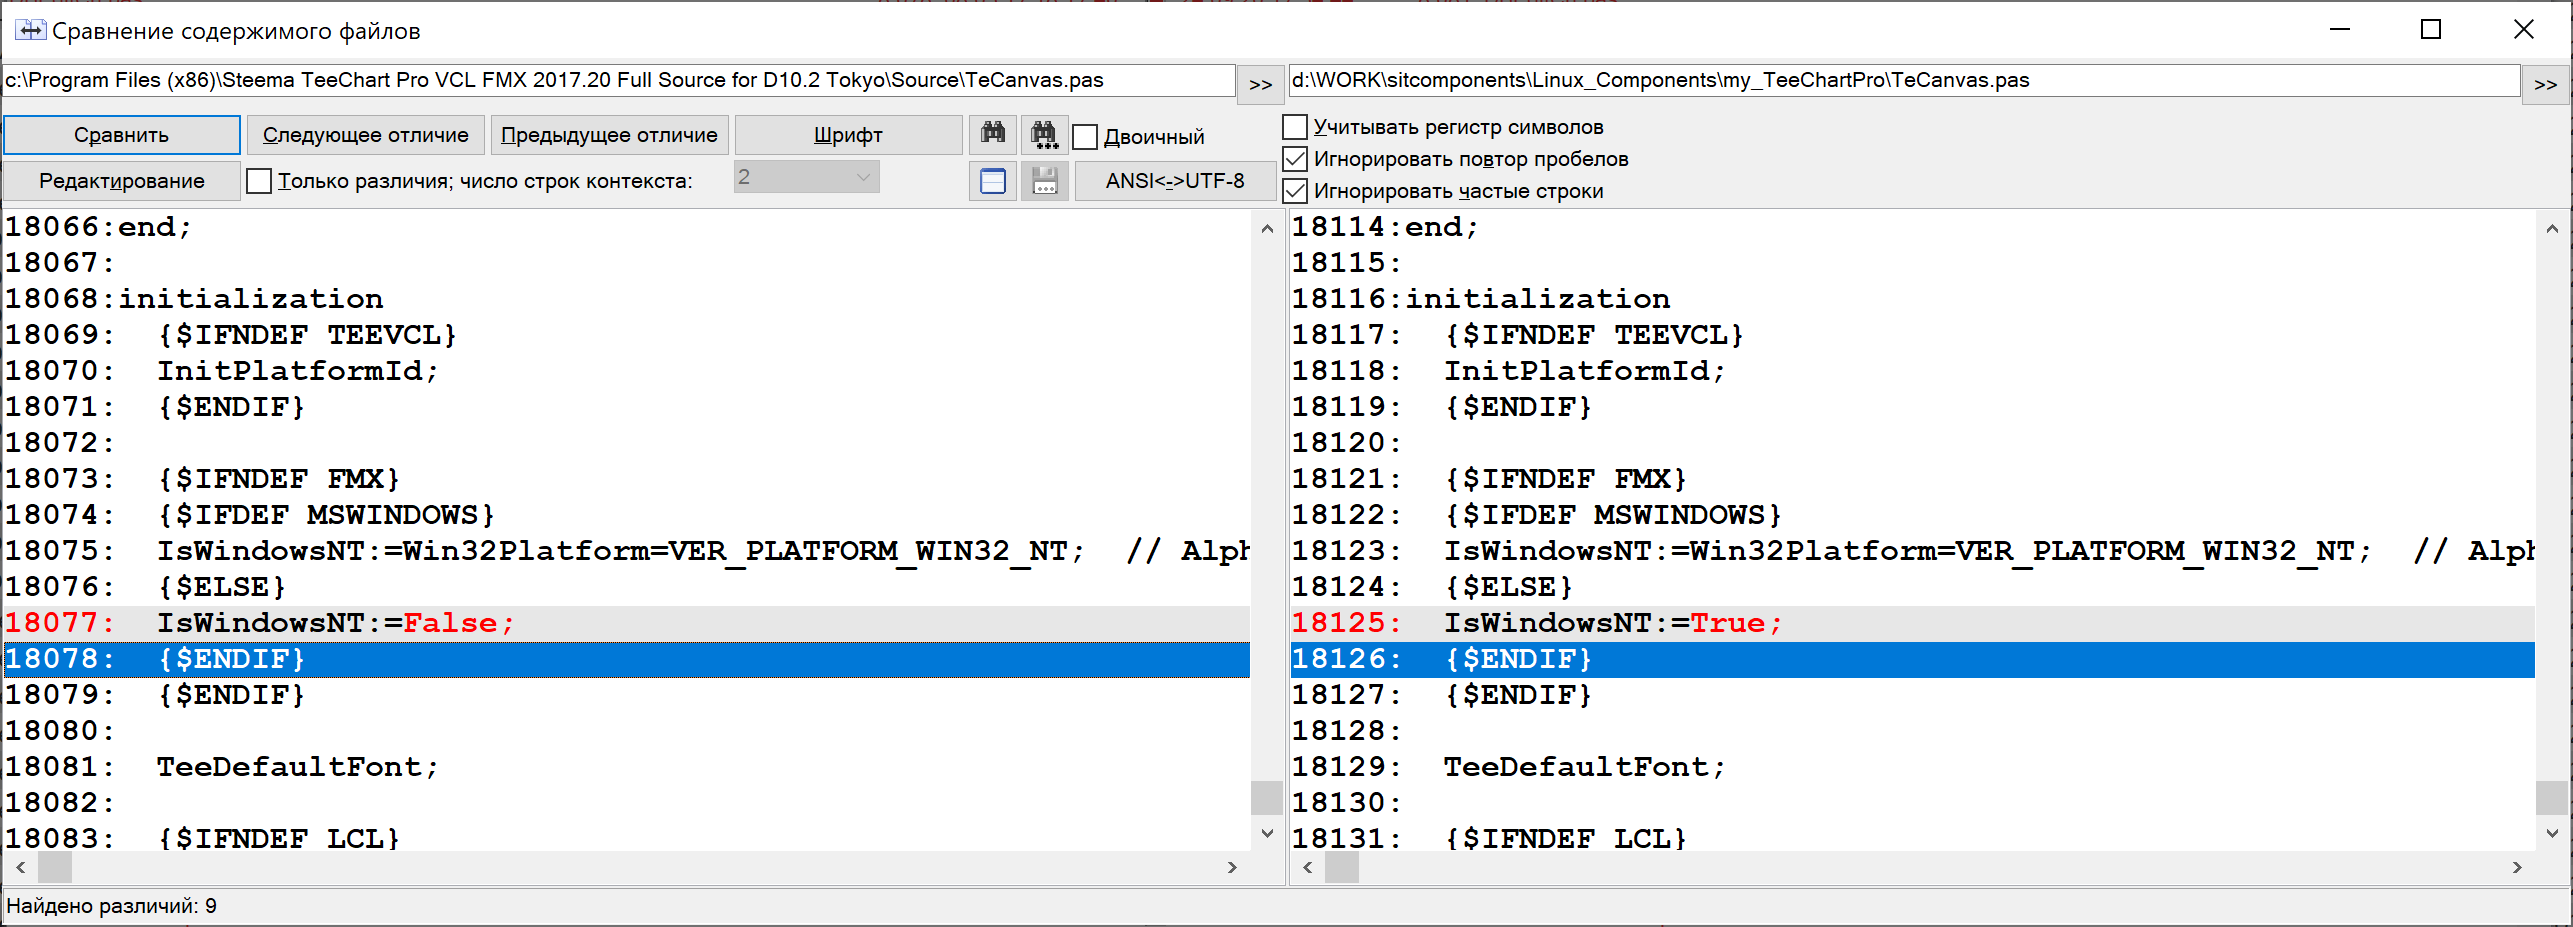 Особенности портирования сложного модульного ПО написанного на Delphi под ОС Linux - 12